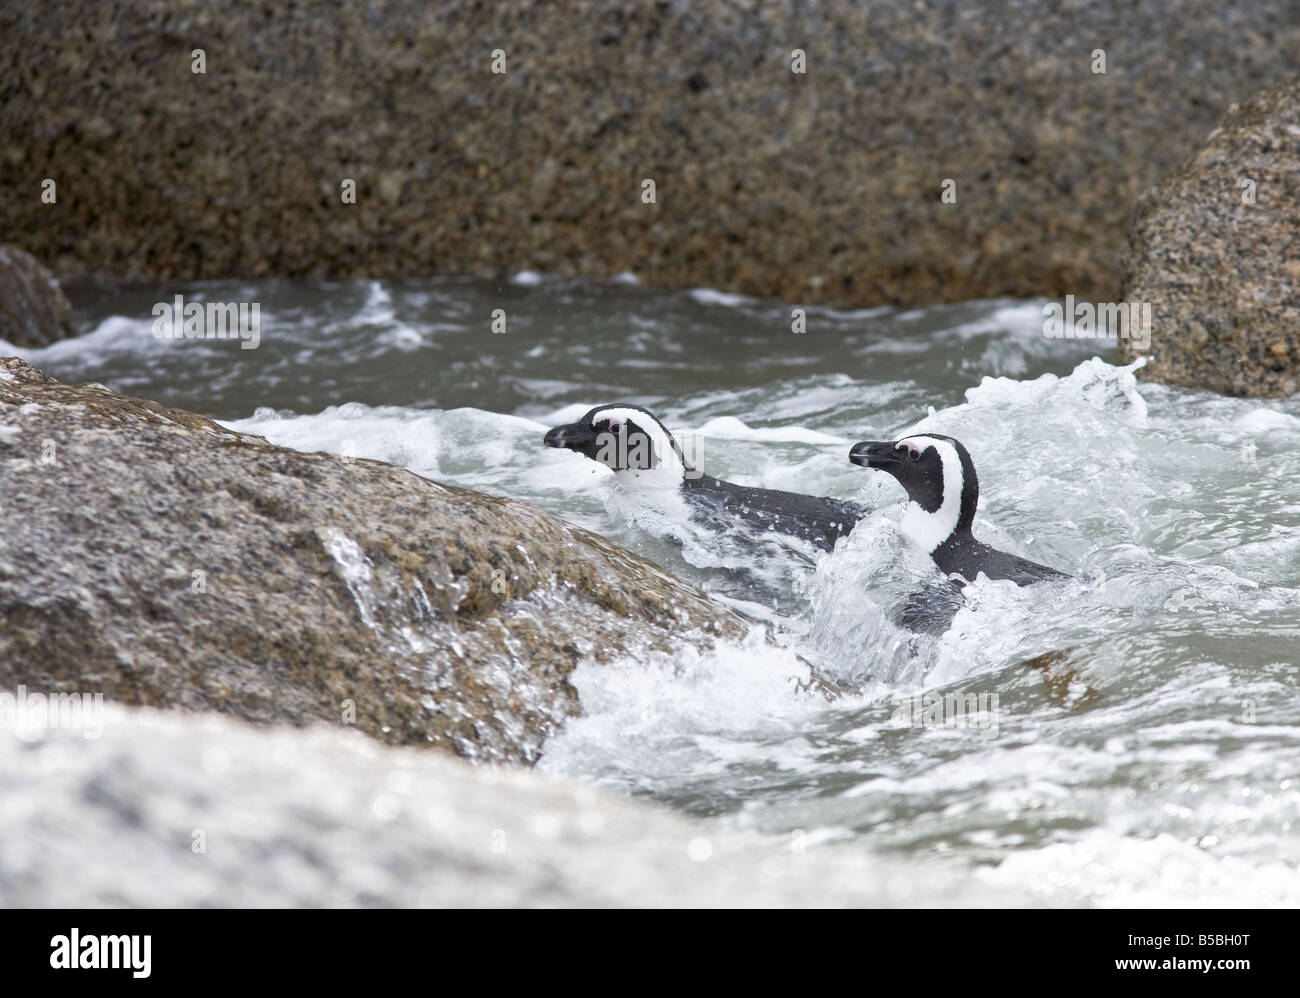 Pinguino africano (Sfenicus demersis) due Jackass pinguino nuoto. Una specie a rischio di estinzione a Boulders Beach Simon's Town, Sudafrica. Foto Stock